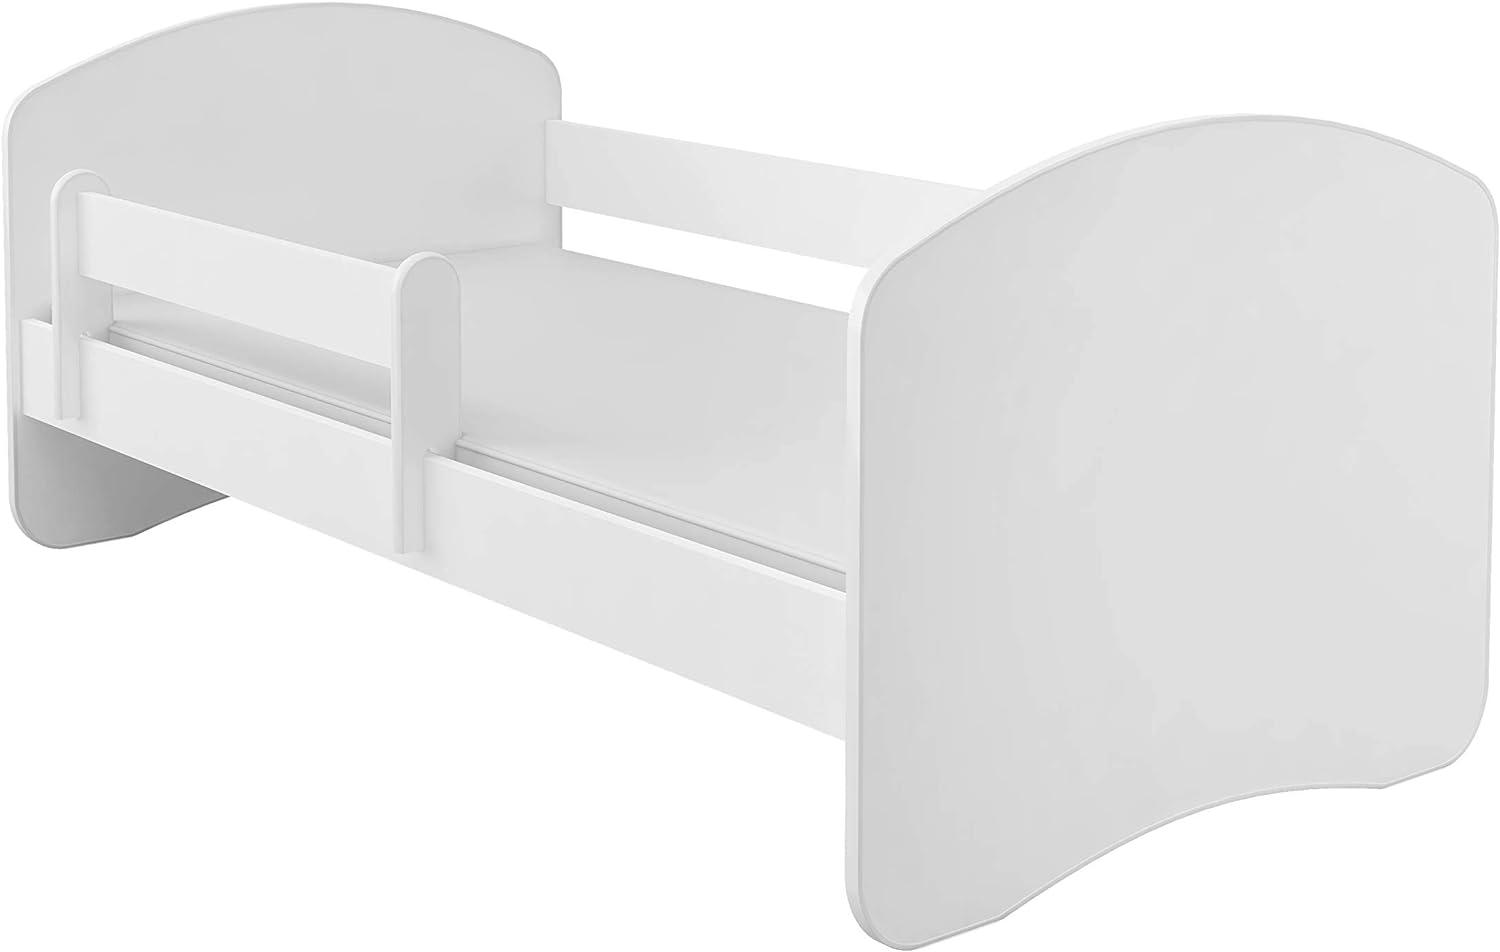 Kinderbett Jugendbett mit einer Schublade und Matratze Weiß ACMA II (140x70 cm, Weiß) Bild 1